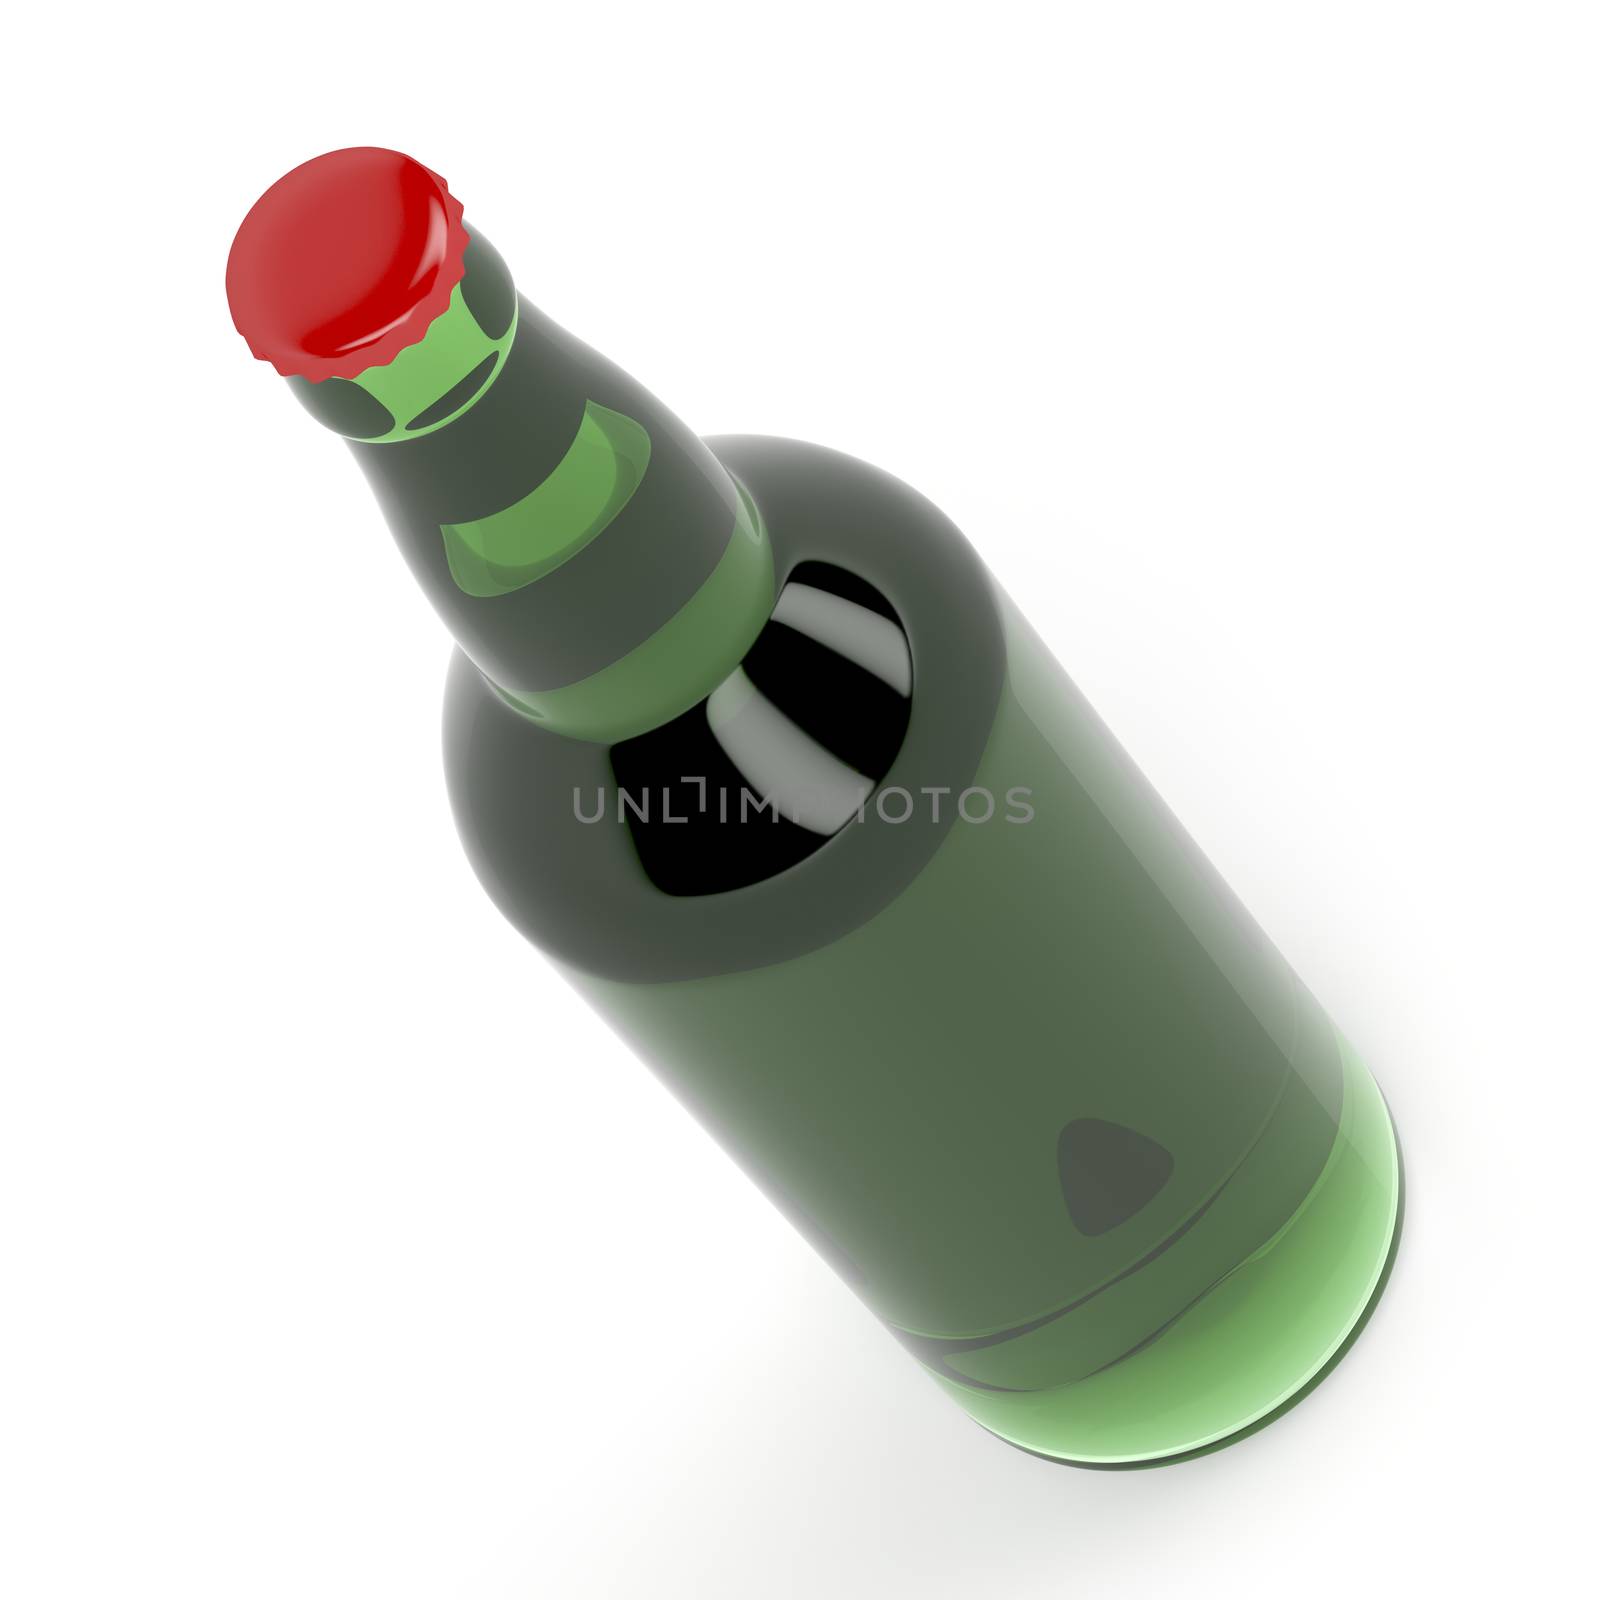 Green beer bottle on white background